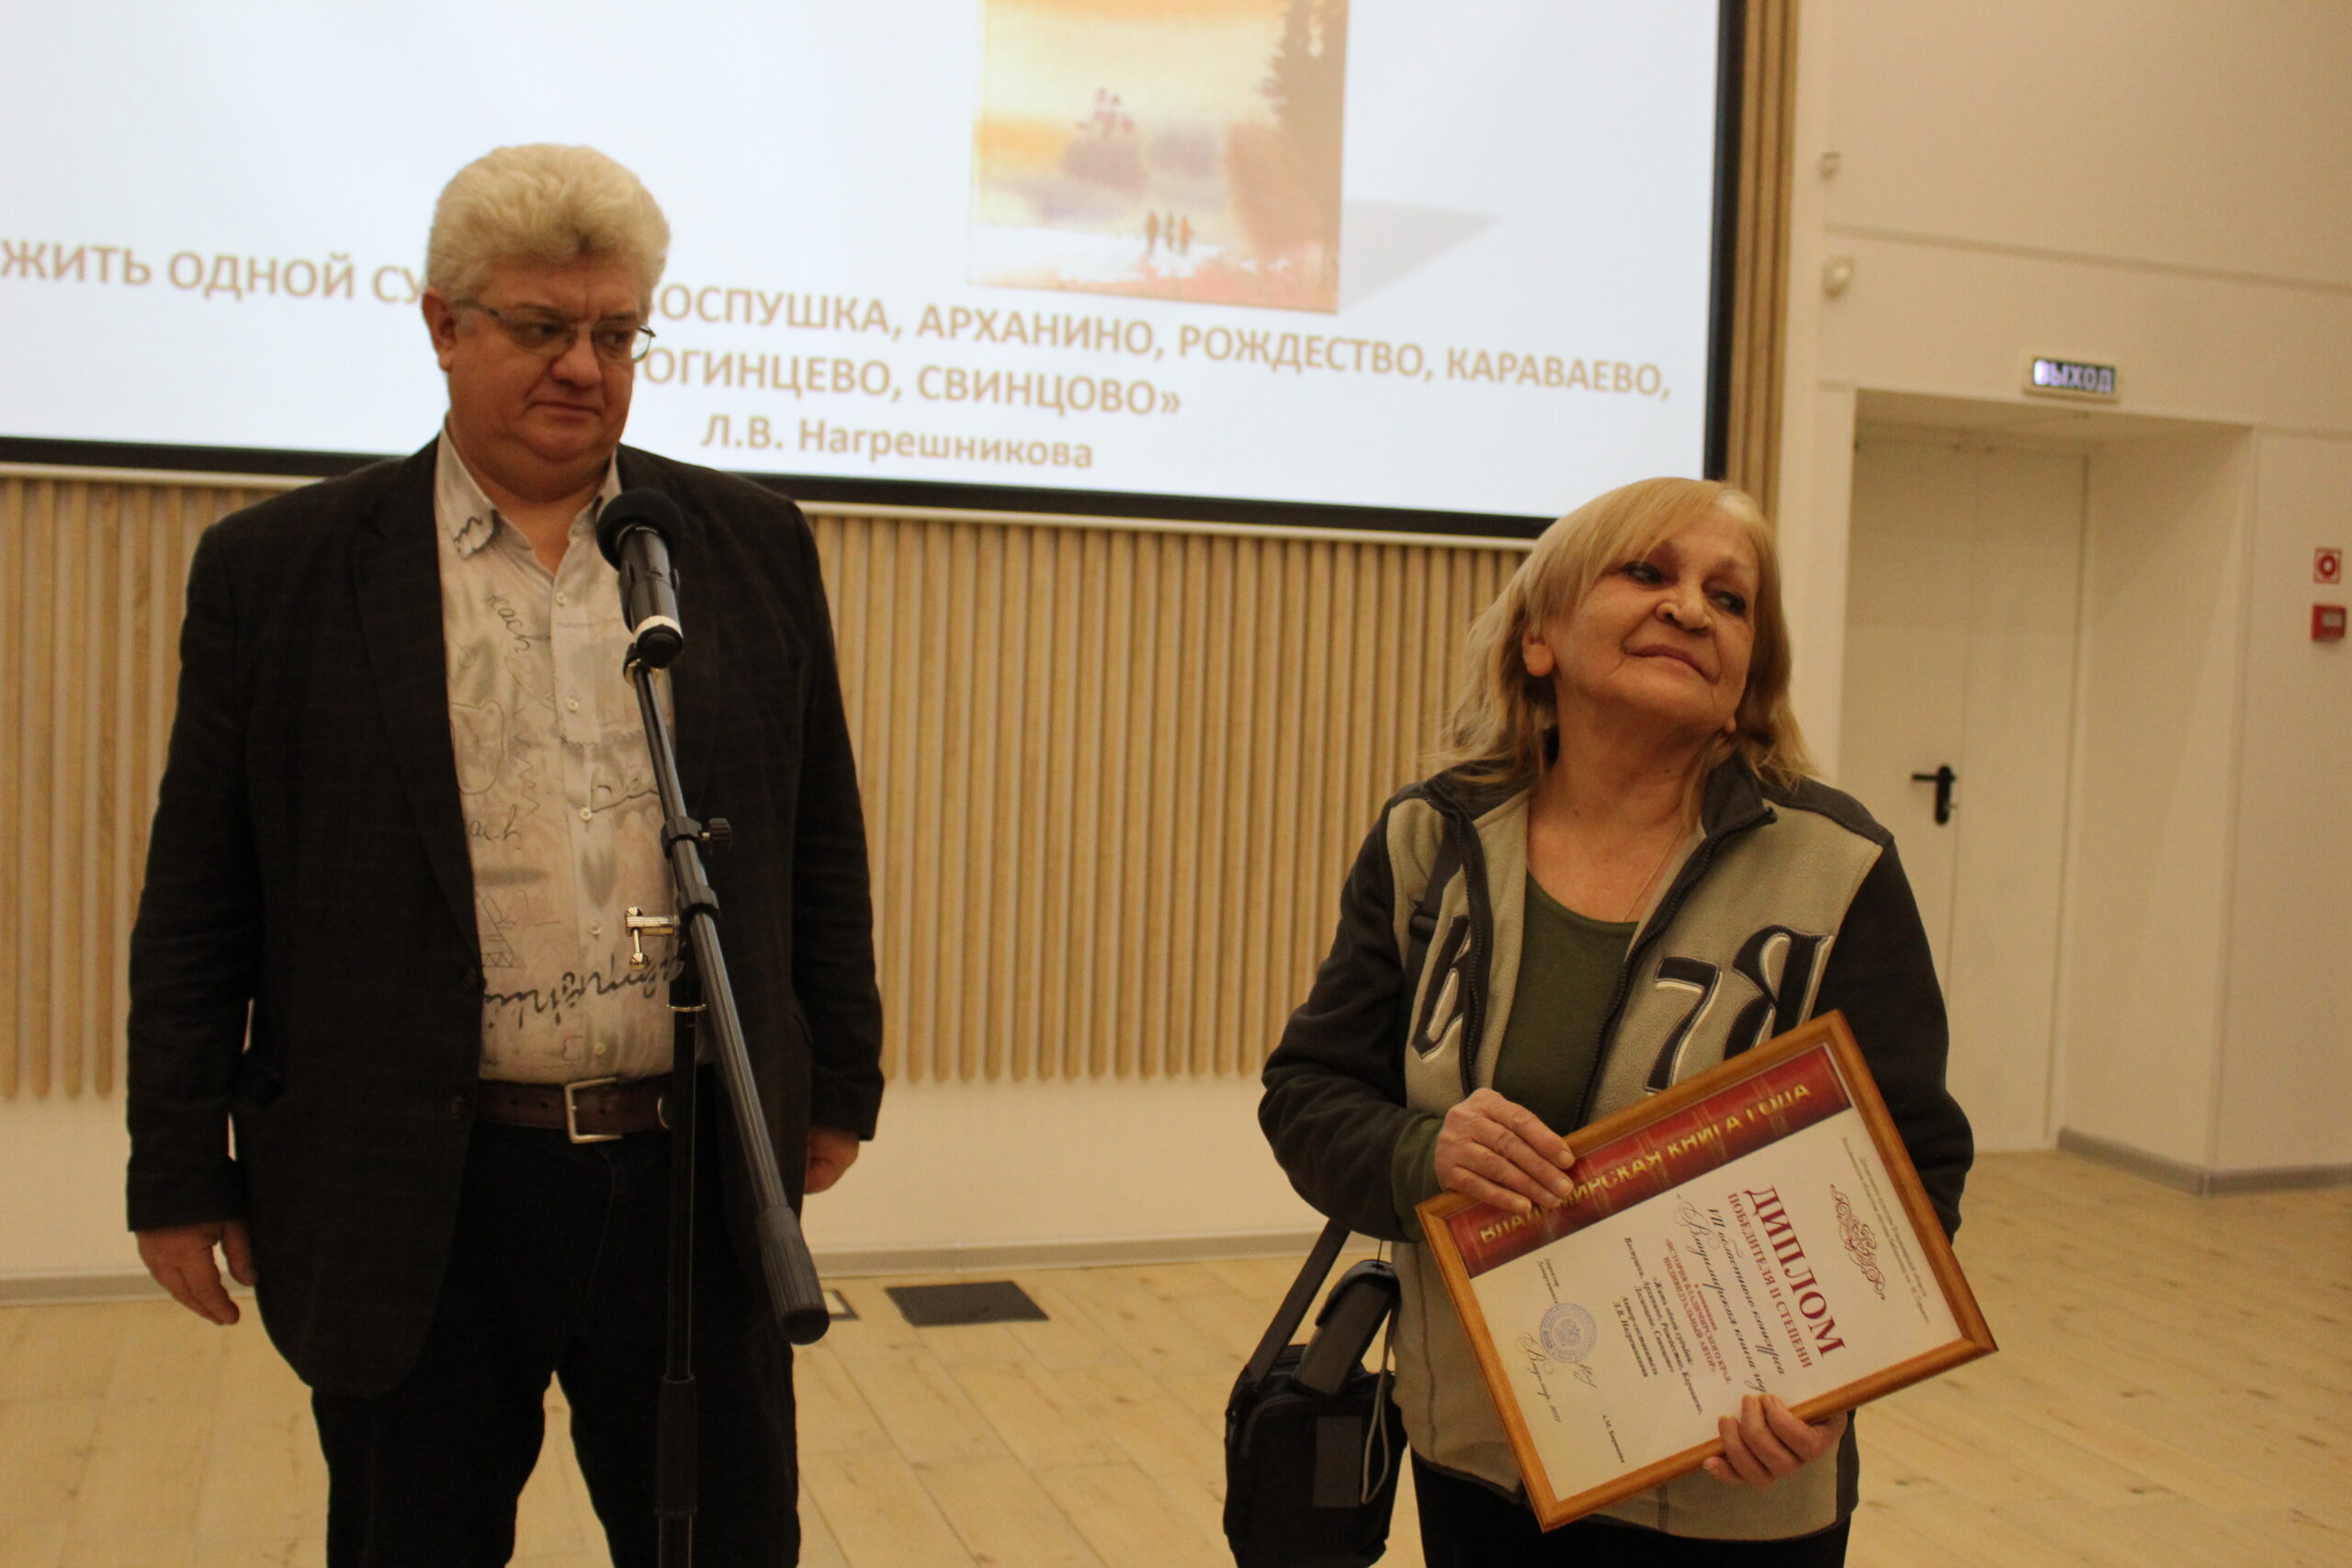 Победители и номинанты Конкурса Книга года Нагрешникова